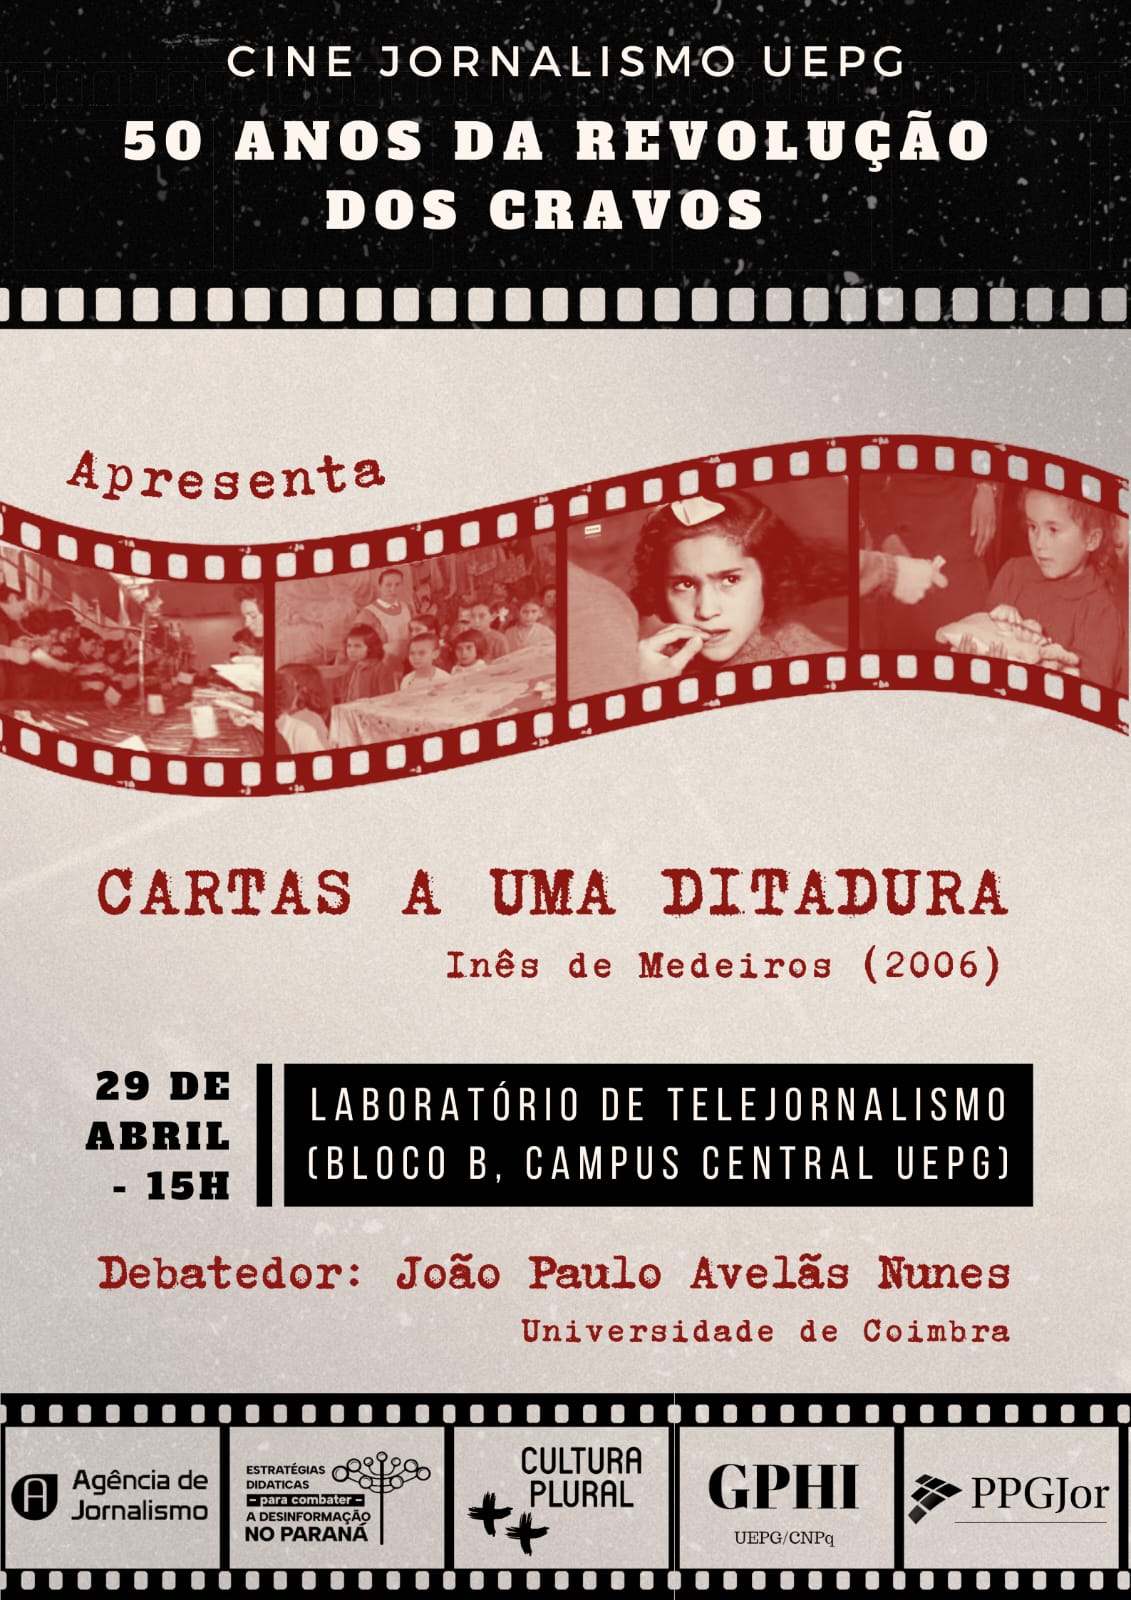 Cine Jornalismo UEPG relembra os 50 anos da Revolução dos Cravos, em Portugal